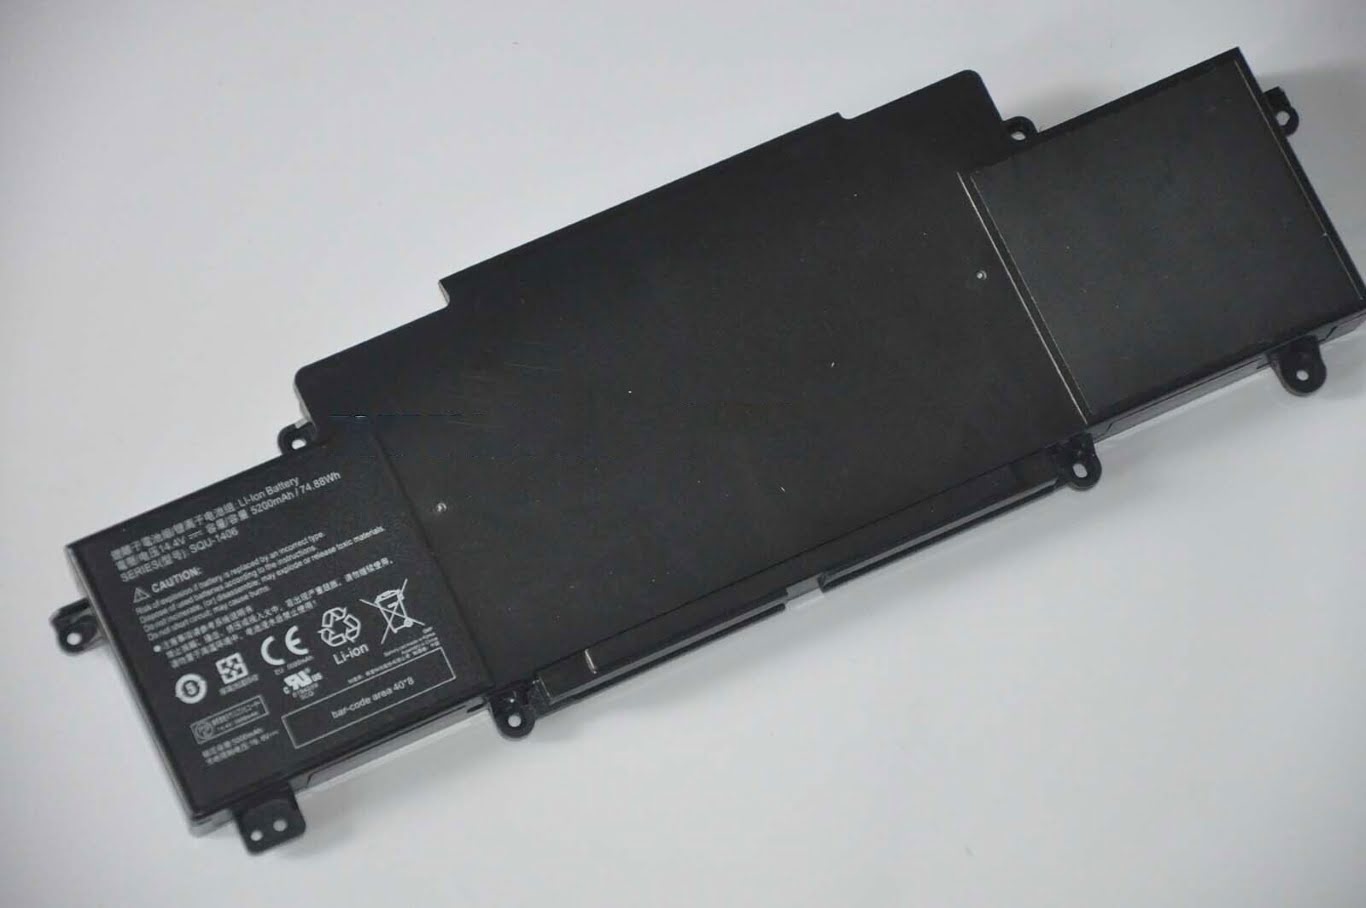 SQU-1406 replacement Laptop Battery for Thunderobot 911(Turbo), 911-E1, 14.4V, 5300mah / 74.88wh